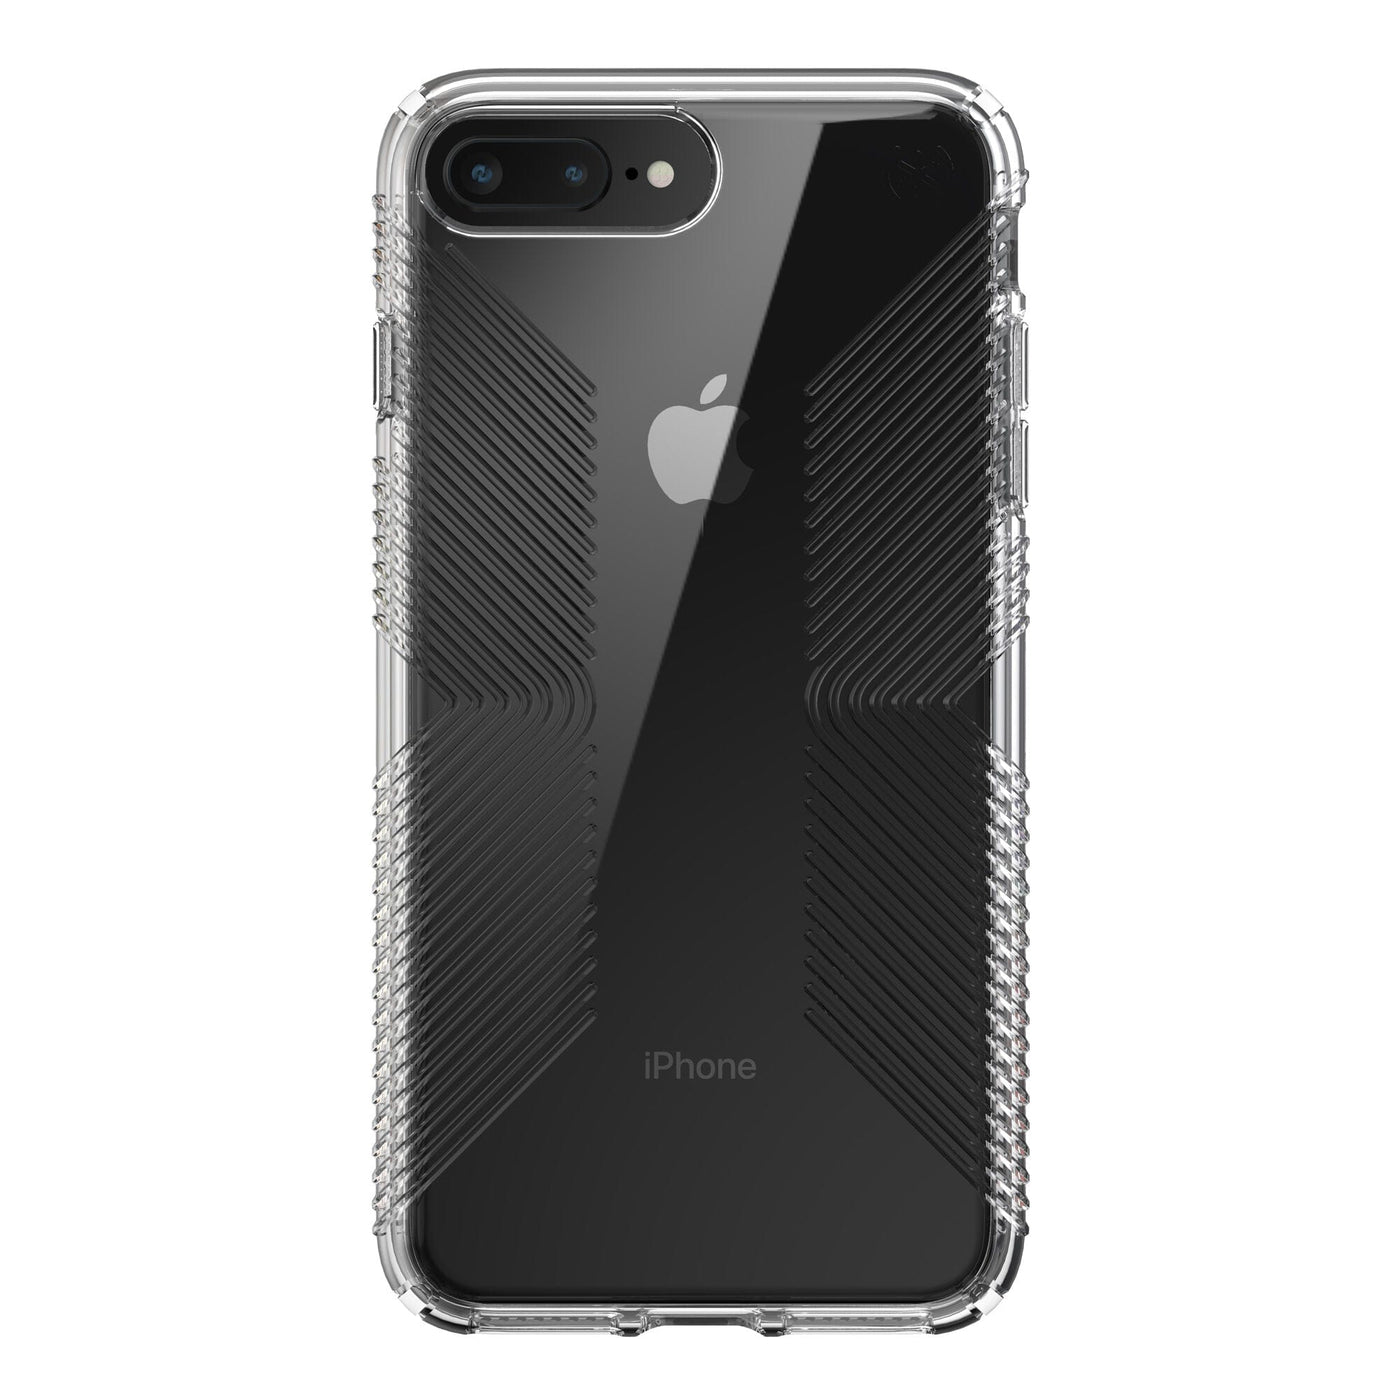 iphone 7 plus case